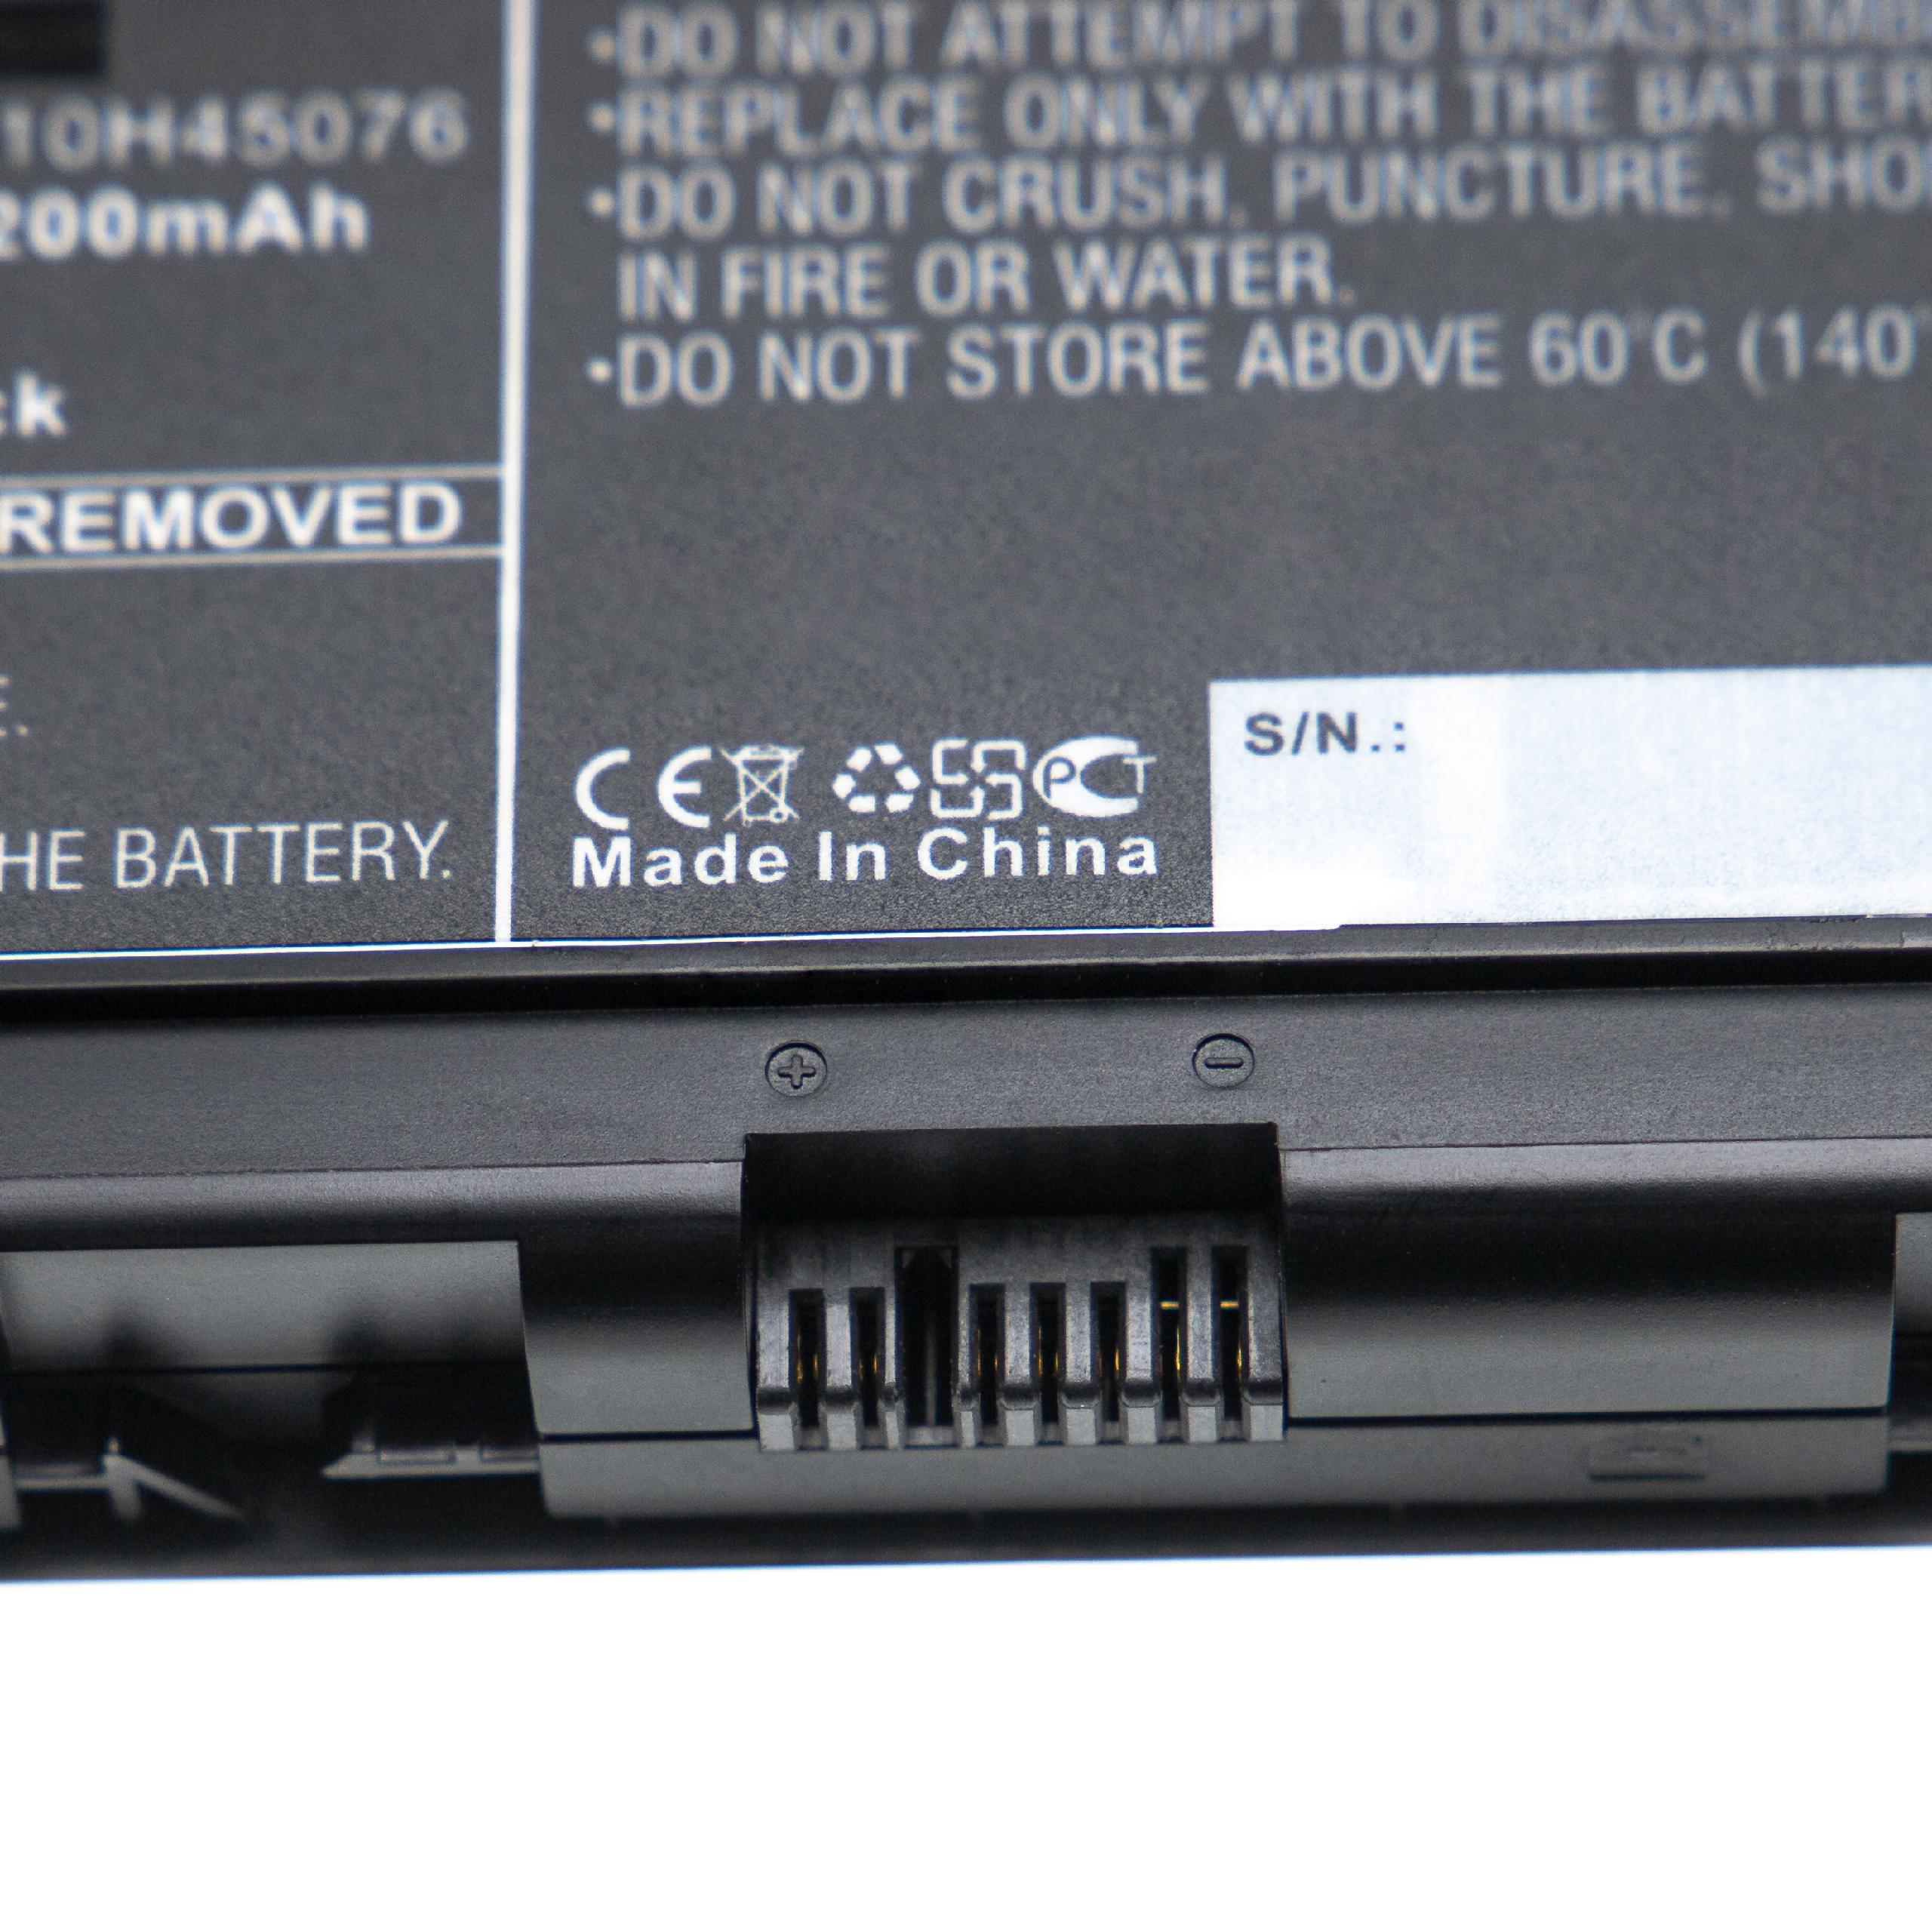 Notebook Battery Replacement for Lenovo 00NY490, 01AV476, 00NY493, 00NY492, 00NY491 - 4200mAh 15.2V Li-Ion